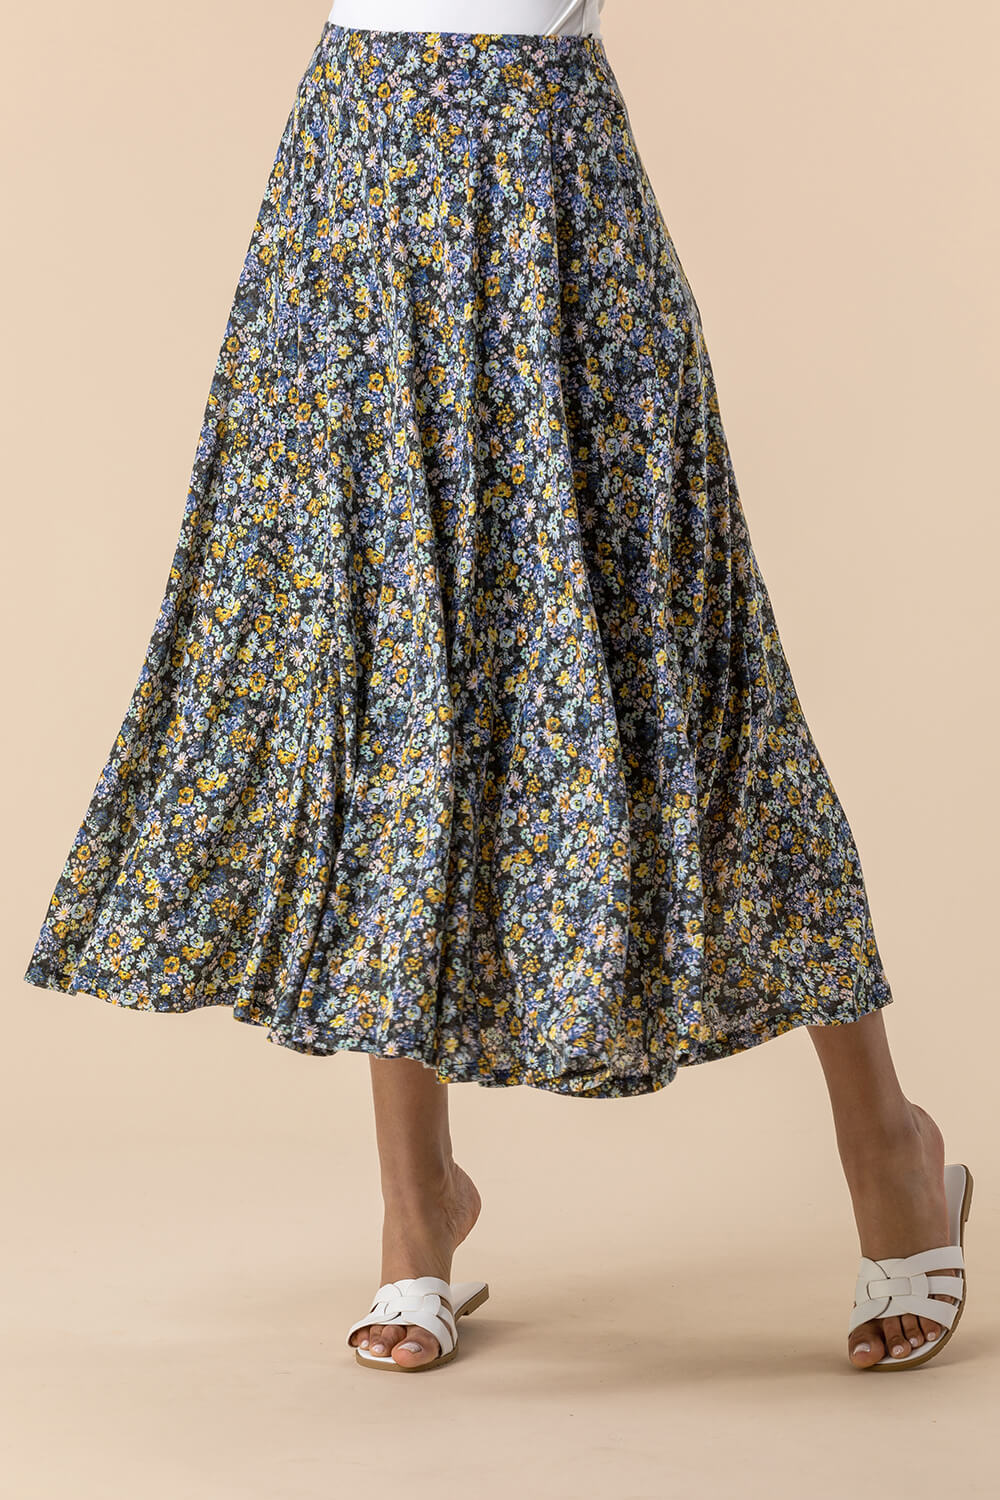 Ditsy Floral Burnout Midi Skirt in Multi - Roman Originals UK